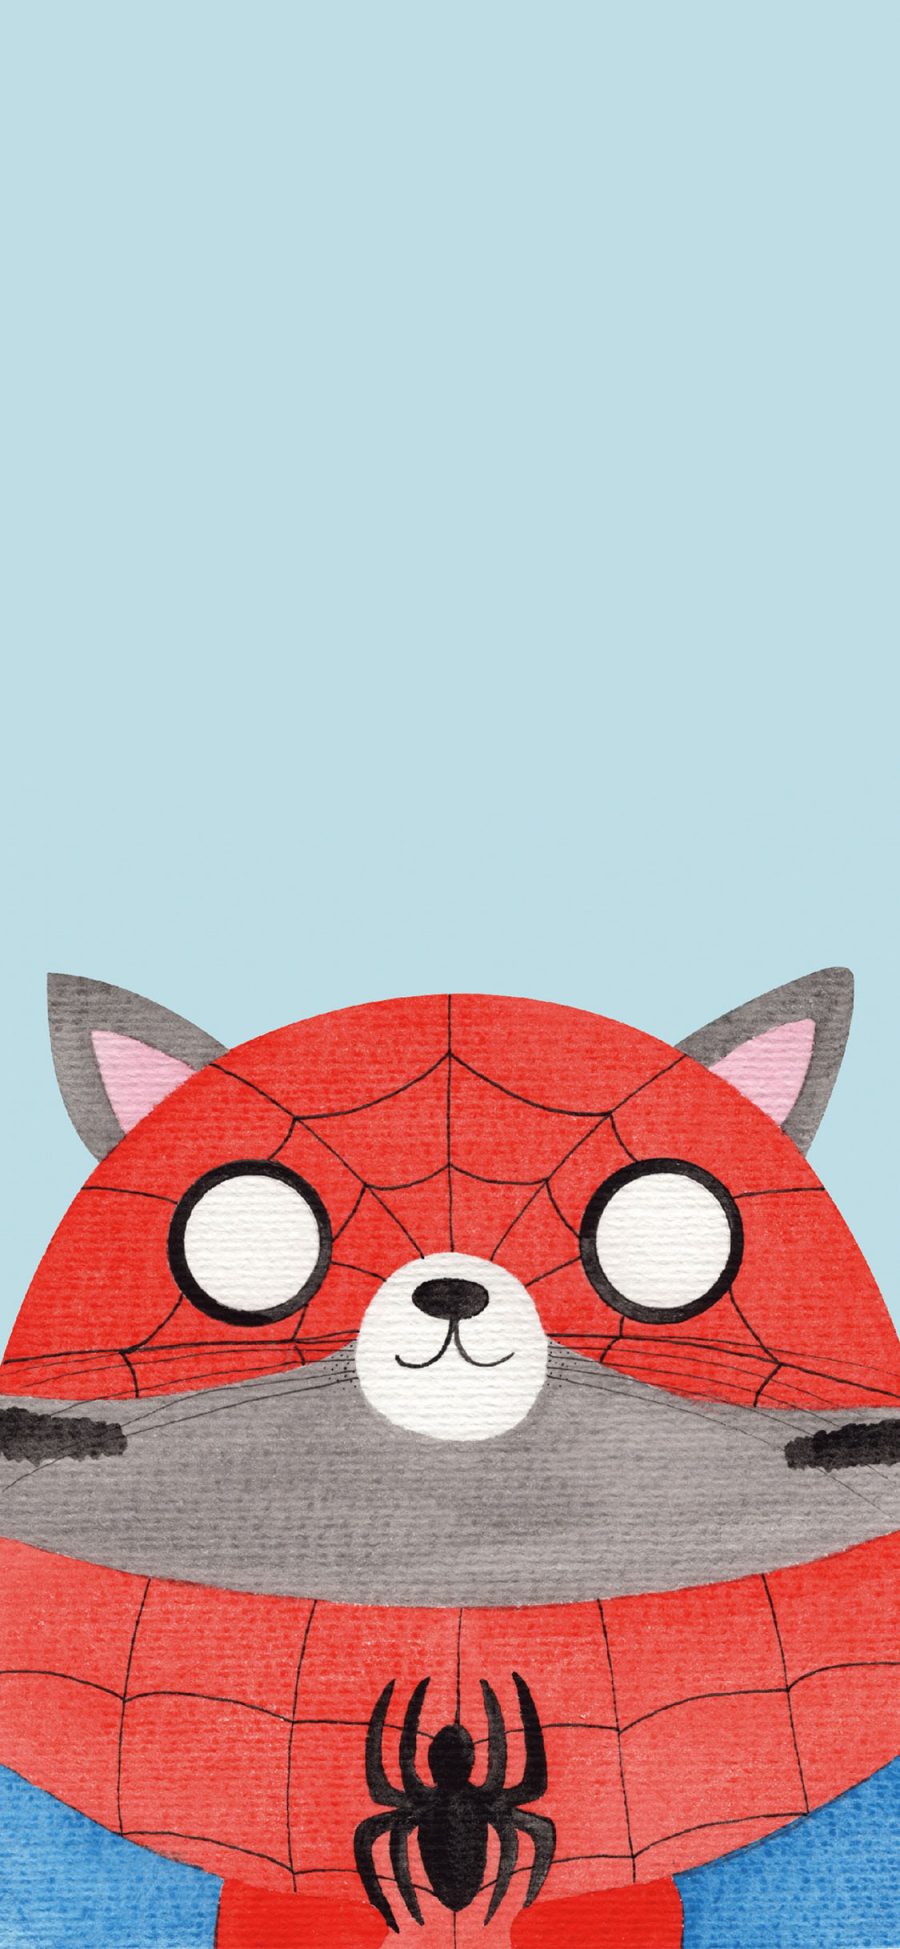 [2436×1125]猫咪 cos 漫威 蜘蛛侠 苹果手机动漫壁纸图片